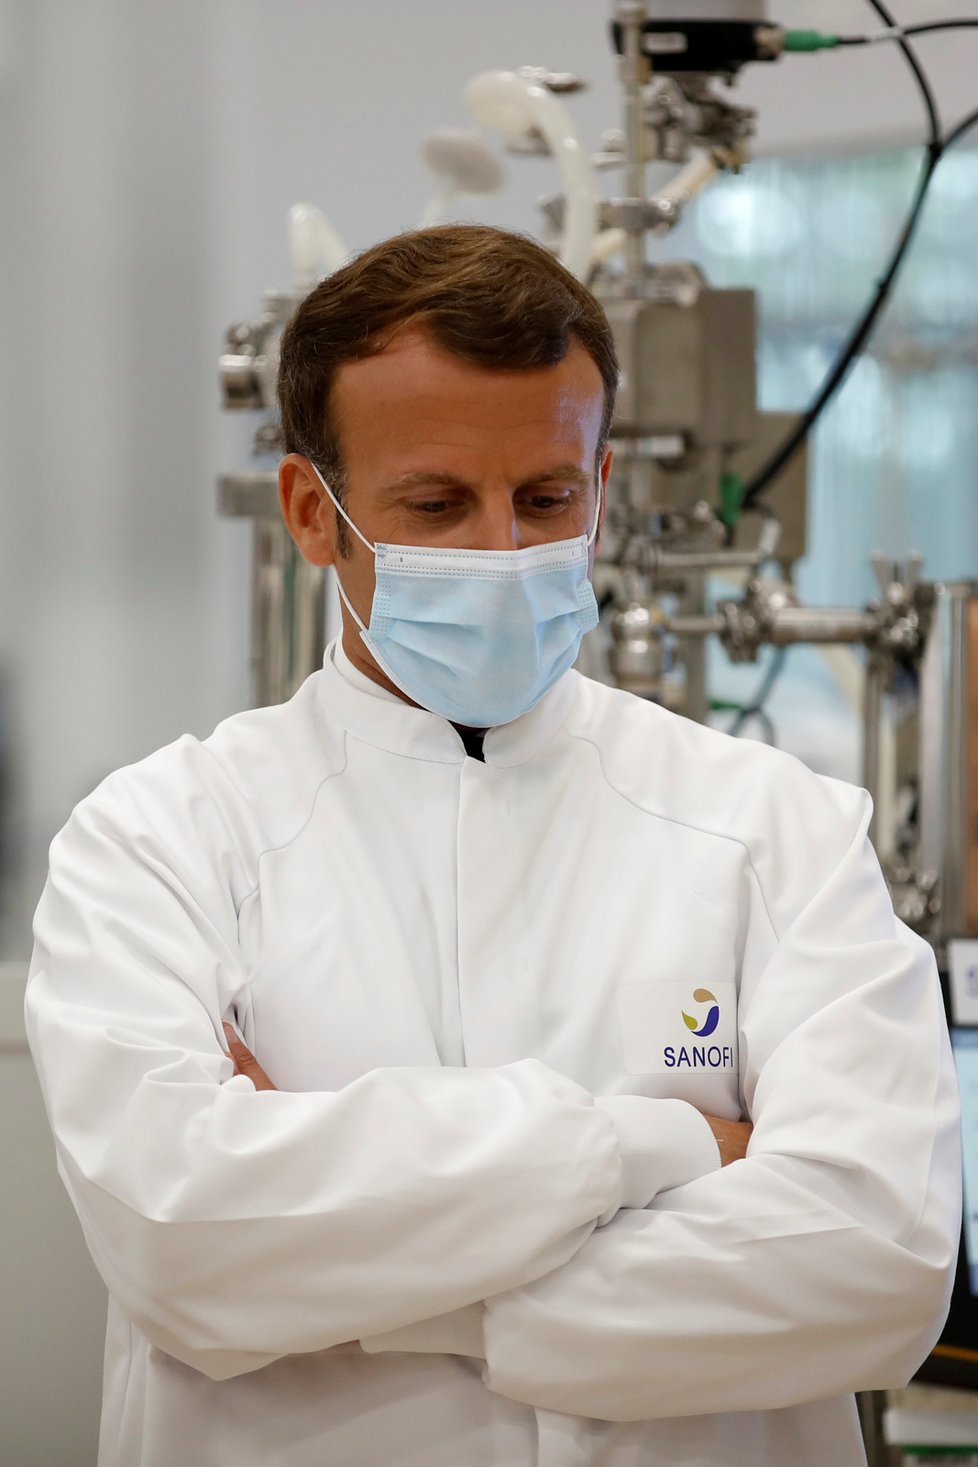 Francouzský prezident Emmanuel Macron během návštěvy laboratoře.